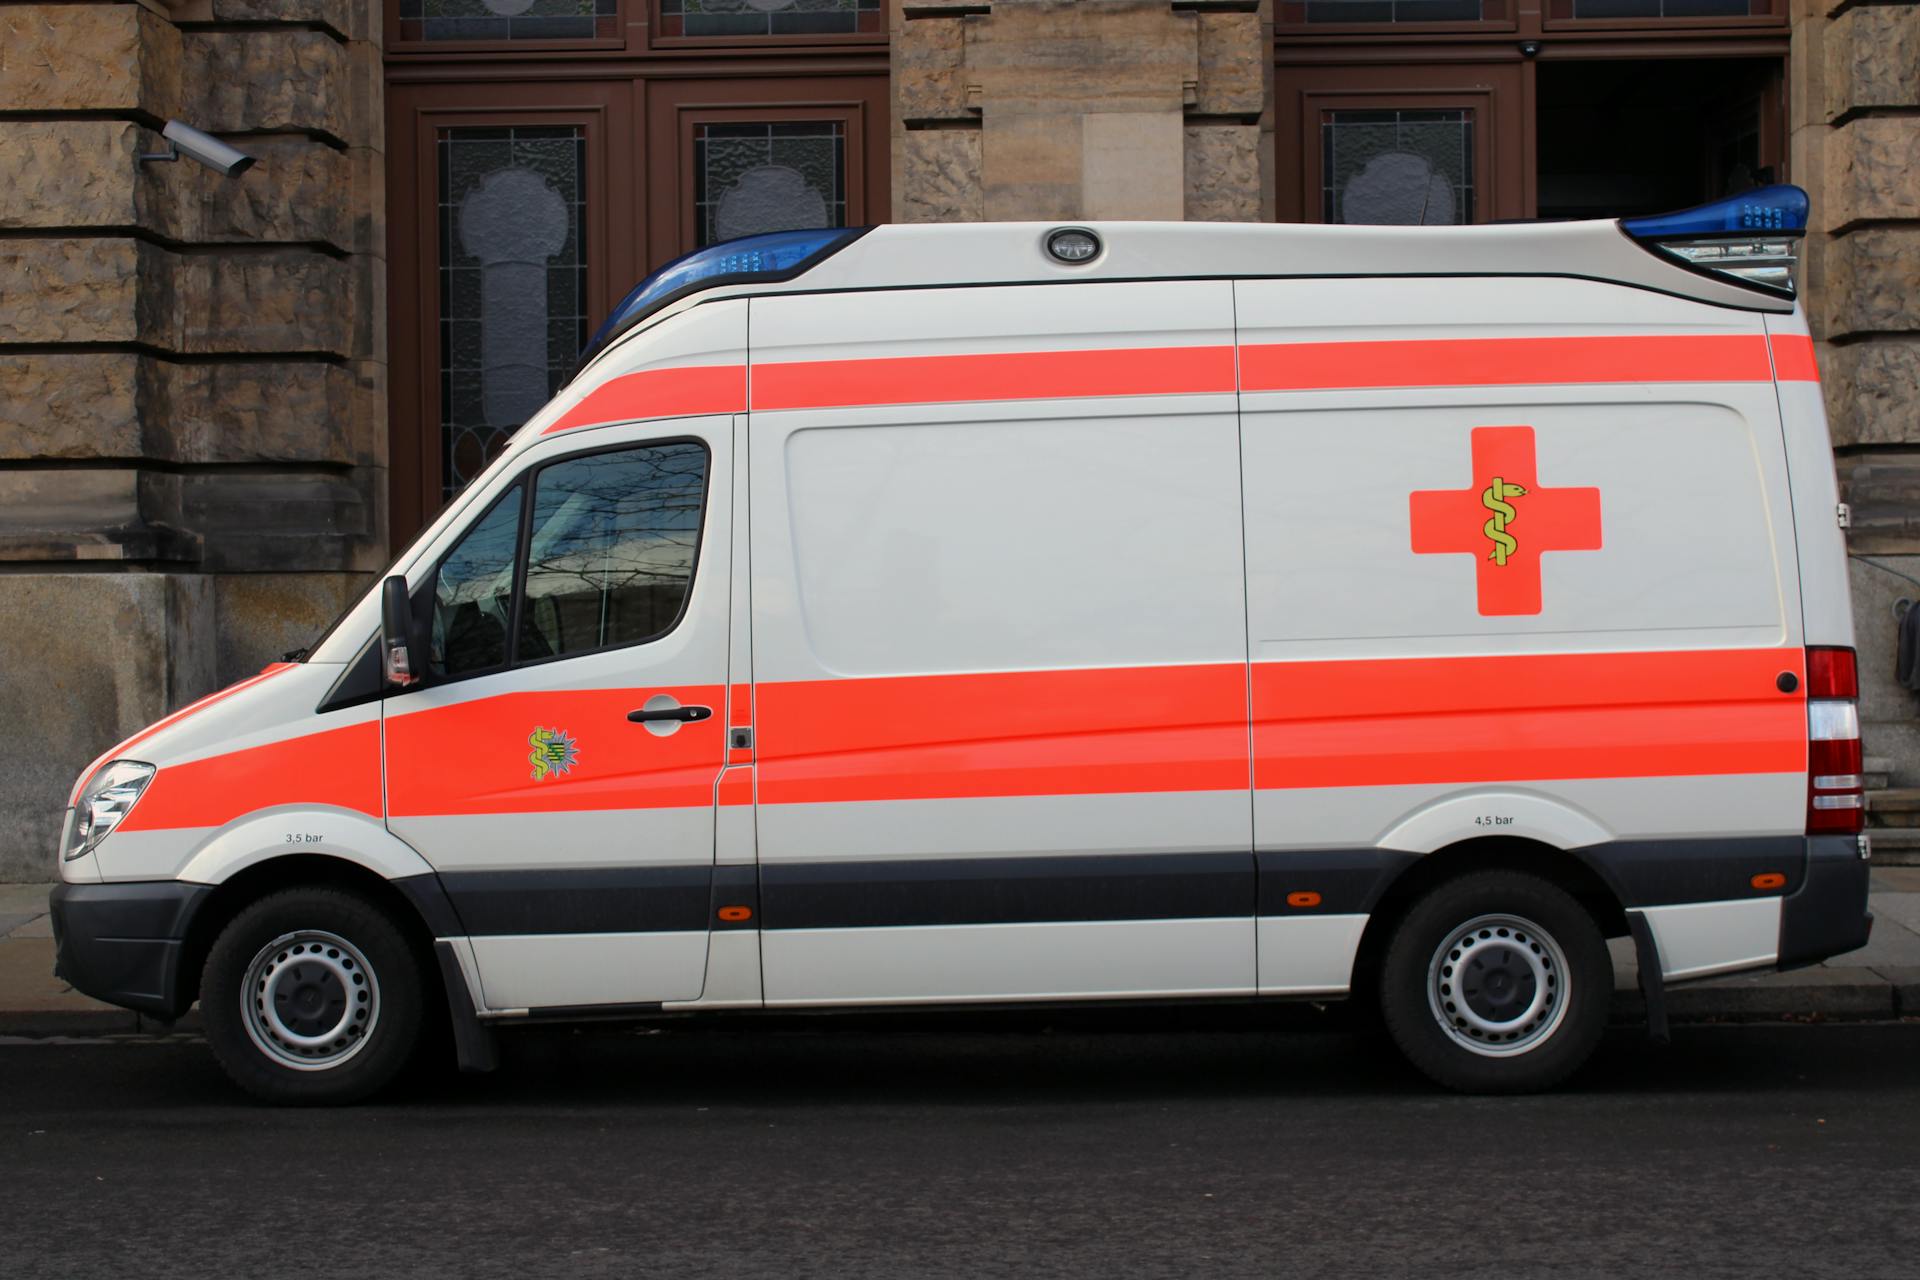 Une ambulance en stationnement | Source : Pexels